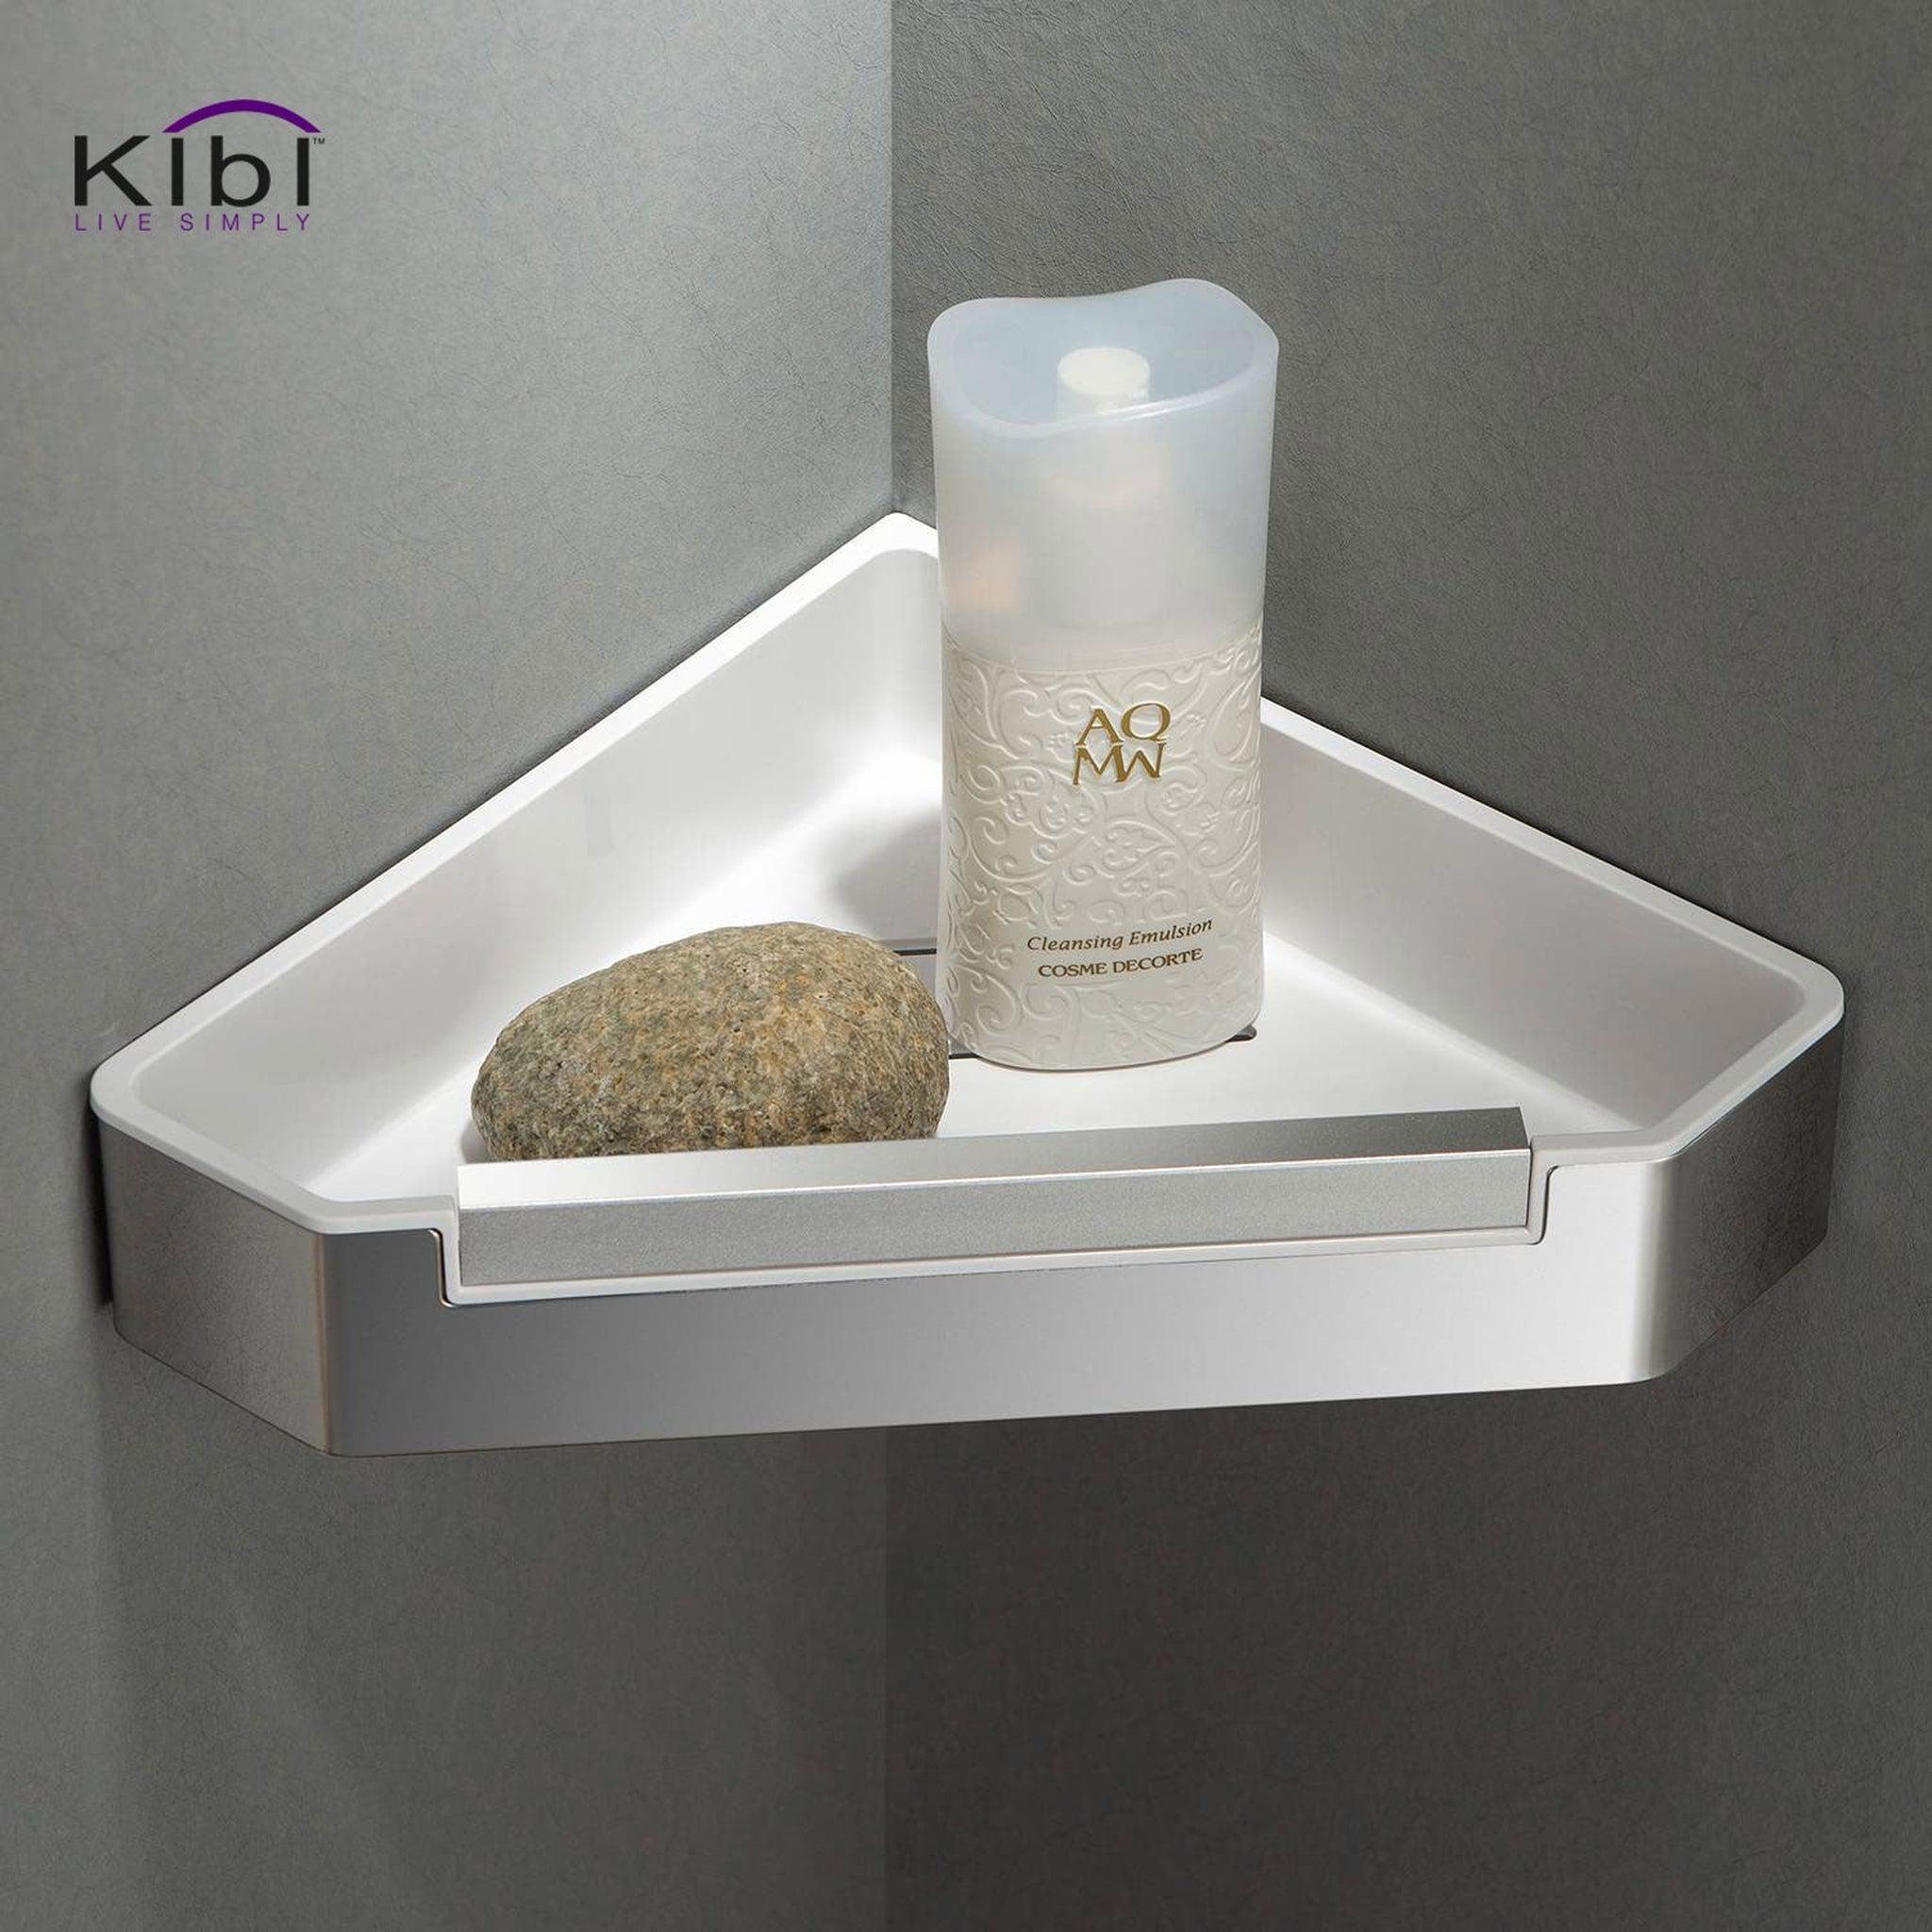 KIBI, KIBI Deco 9" x 2" Bathroom Corner Basket in Chrome Finish